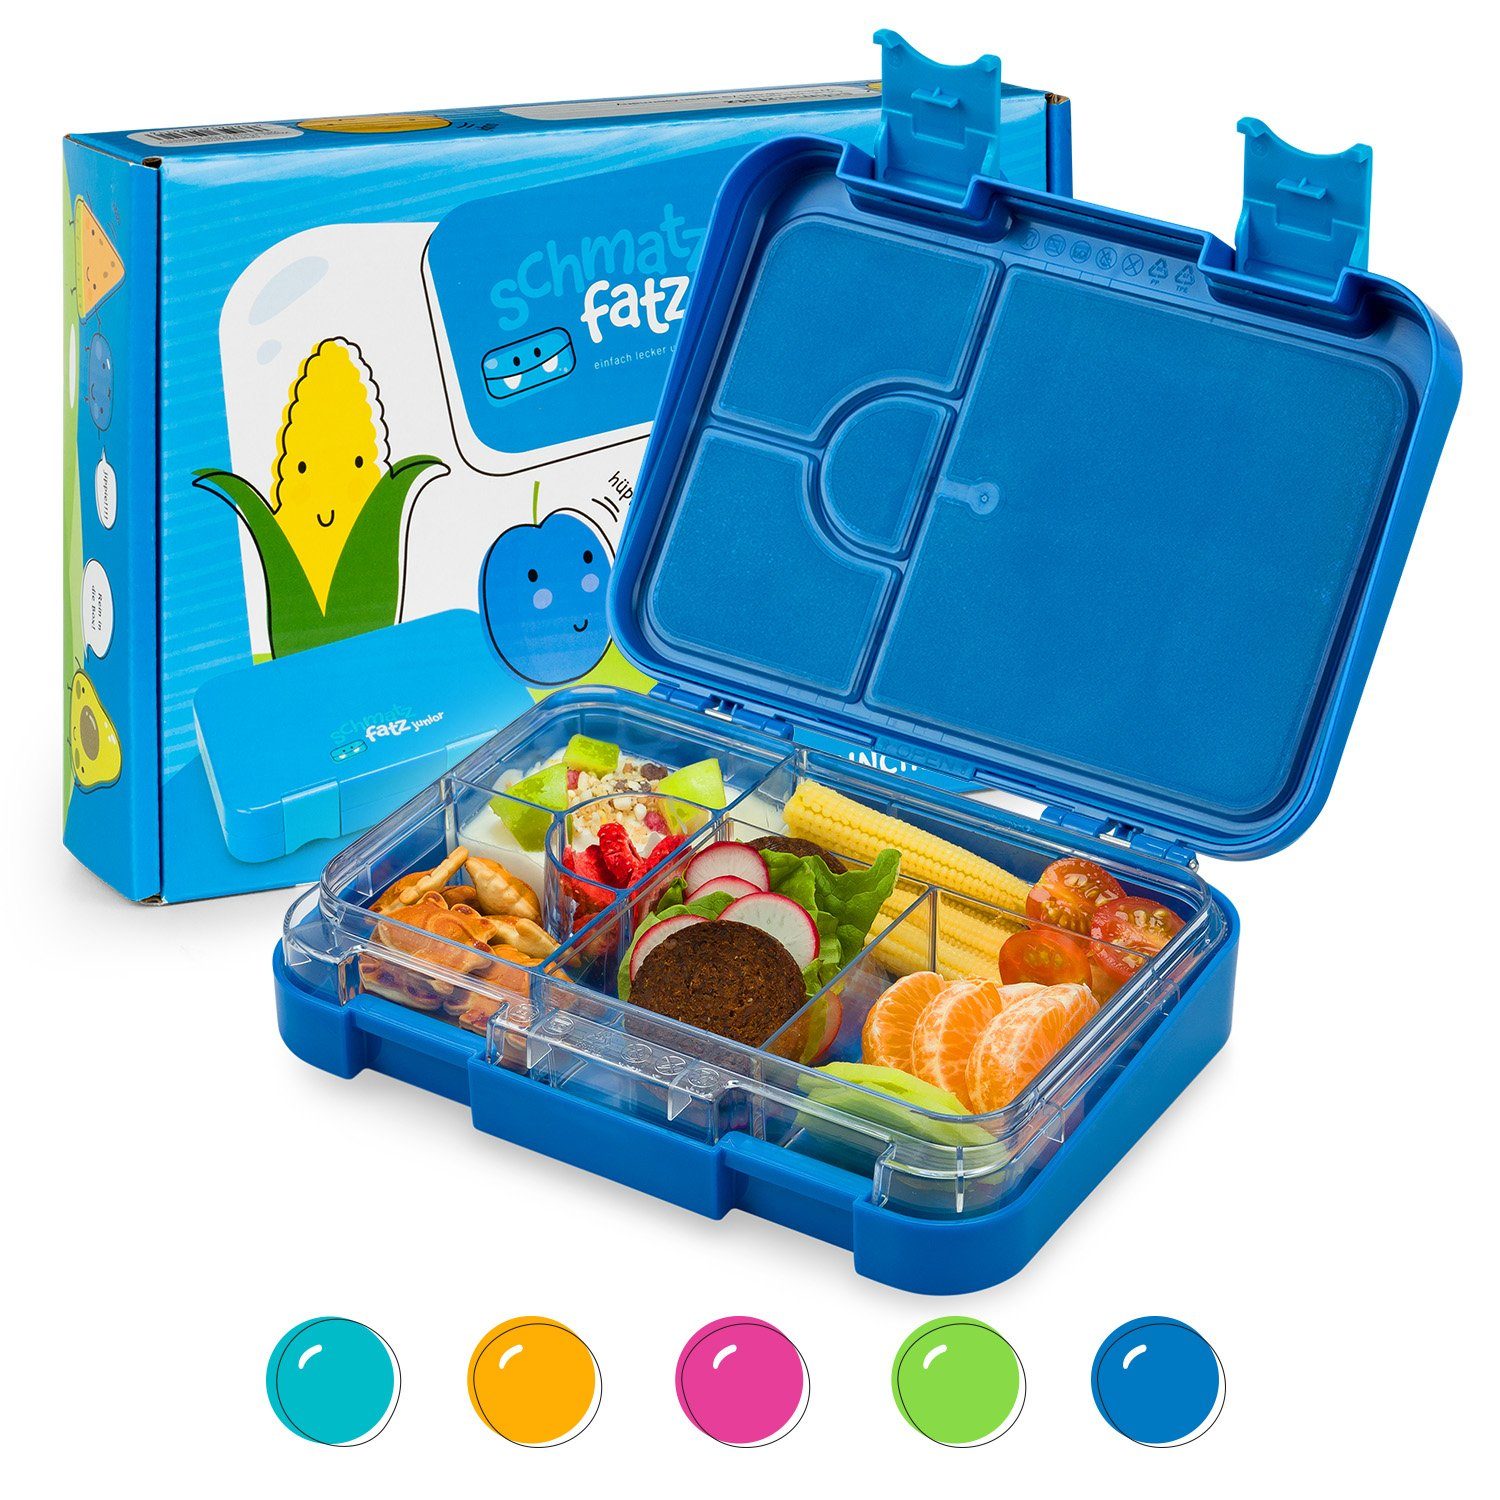 Klarstein Frischhaltedose schmatzfatz junior Lunchbox, Kunststoff Blau